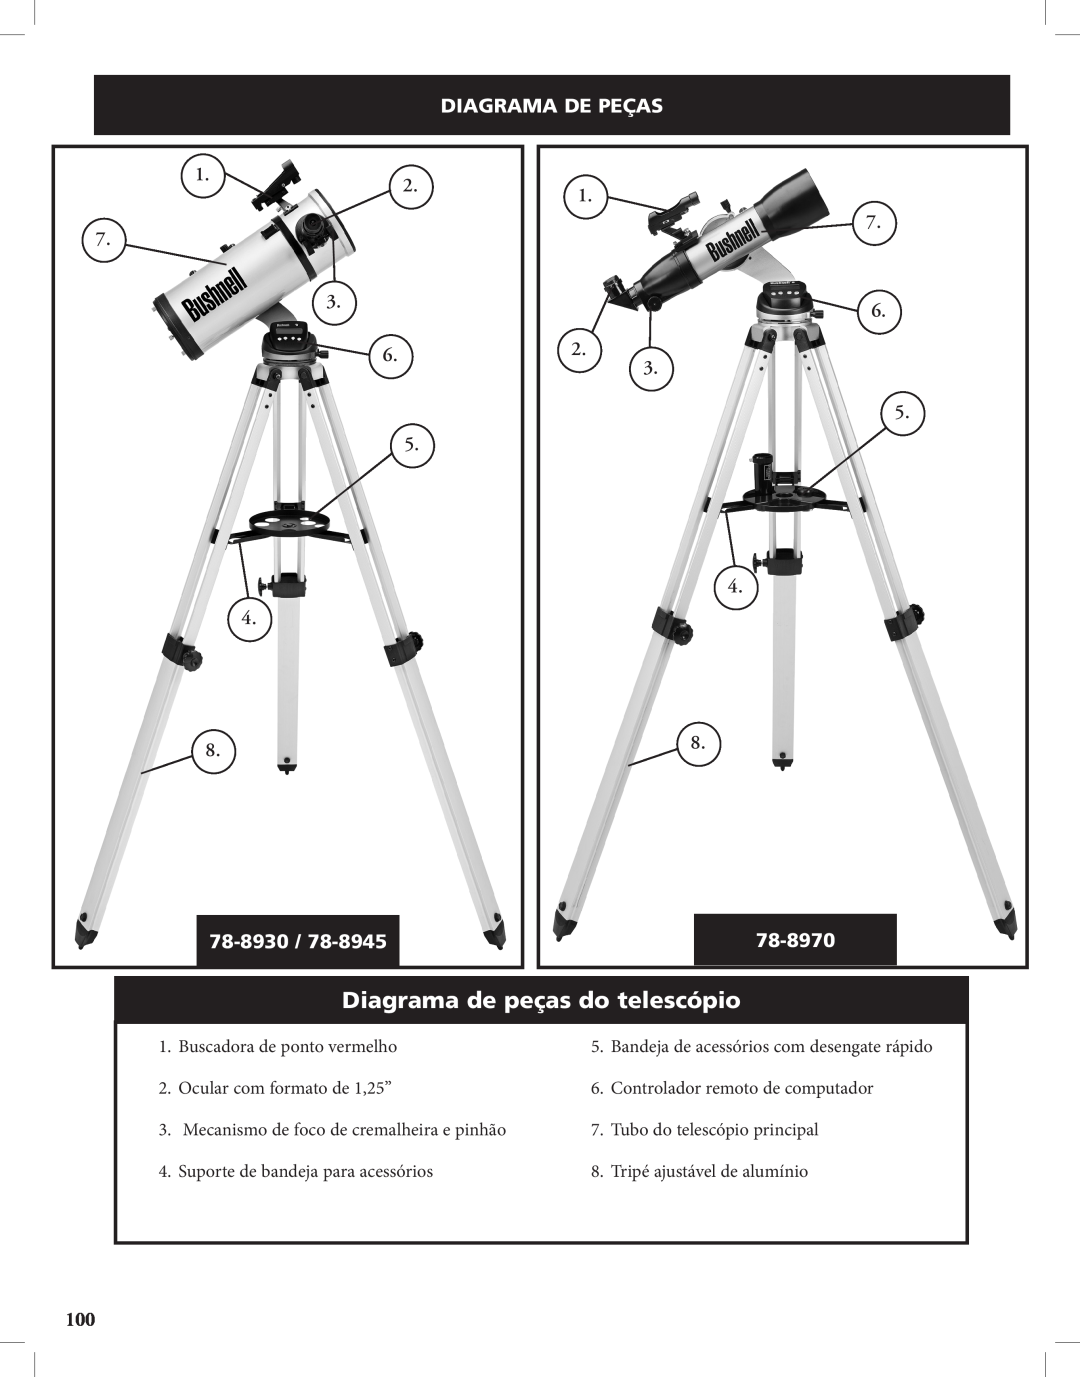 Bushnell Discoverer Diagrama de peças do telescópio, Diagrama De Peças, 1.2 7 3 6 5, 1 7 6 2 3 5, 78-8930, 78-8970 